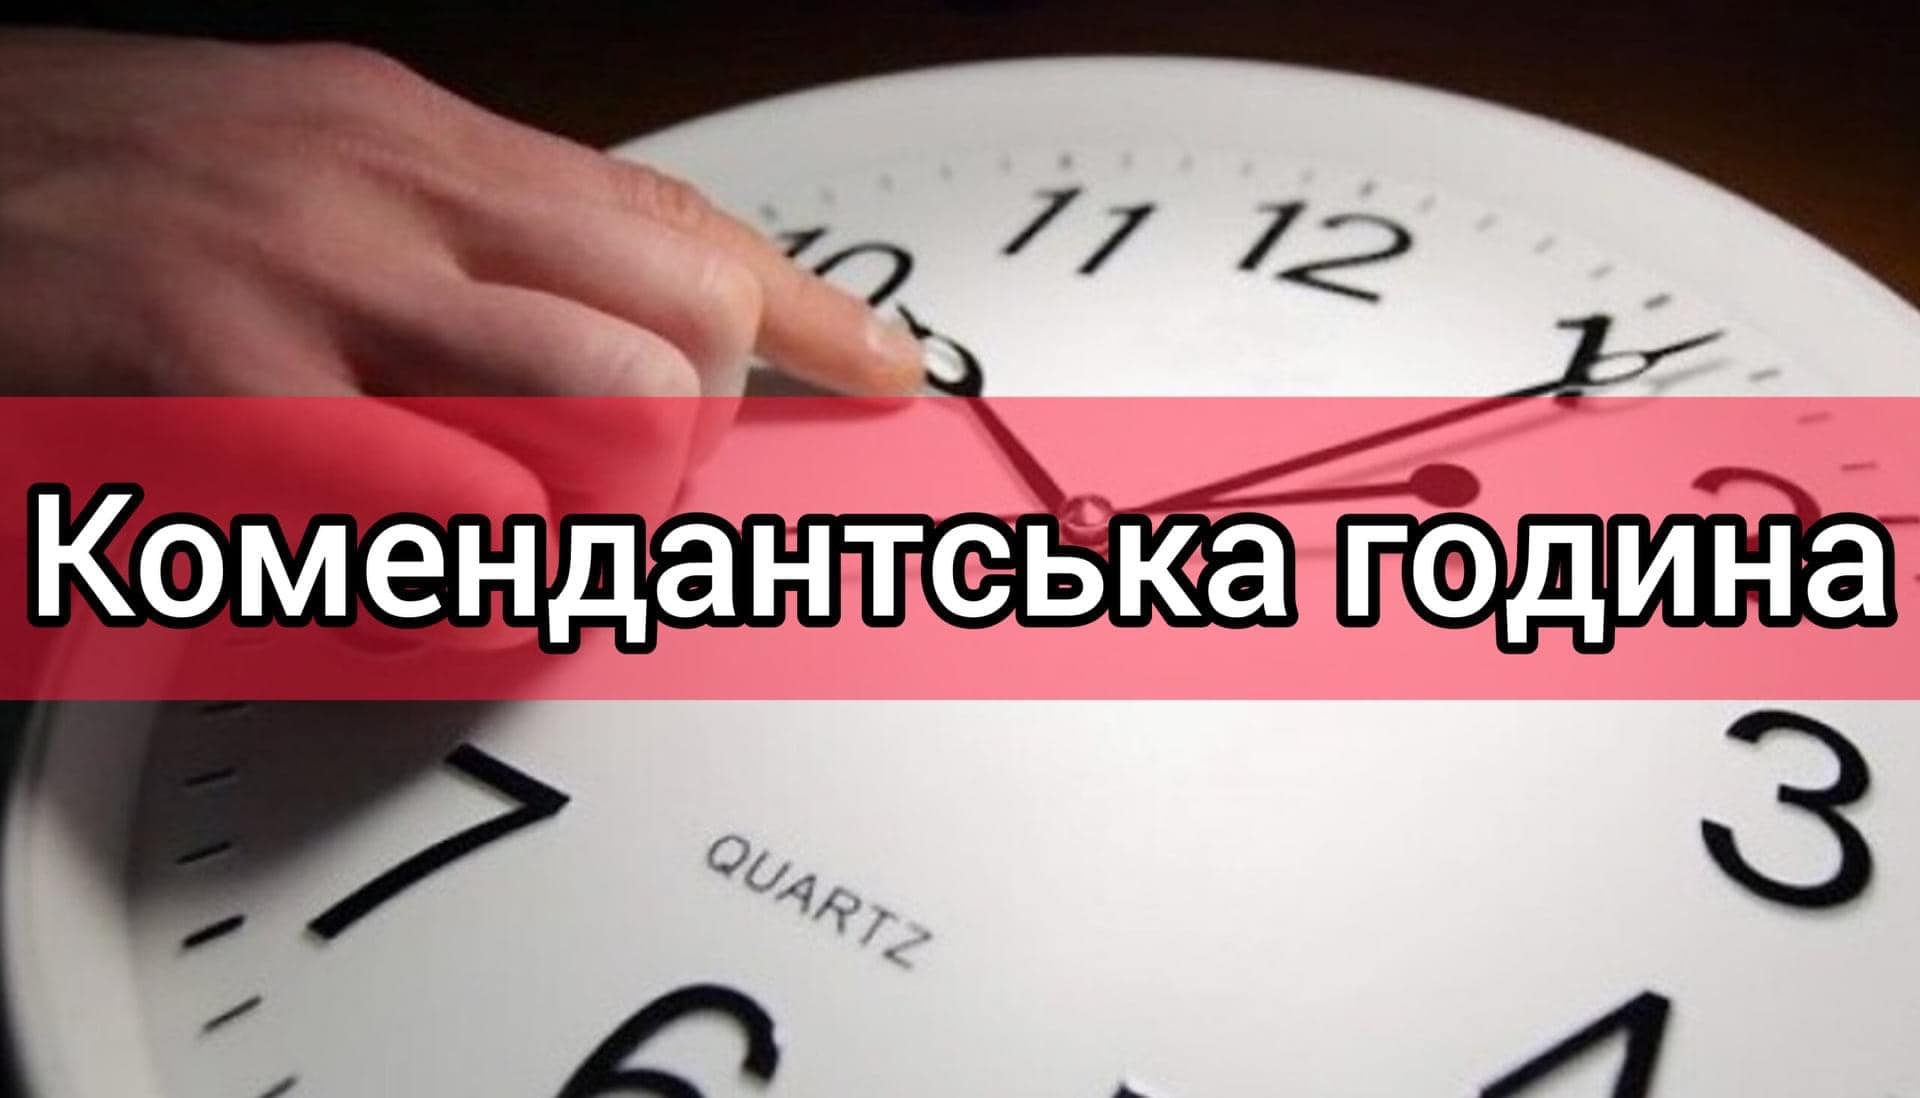 З 1 грудня комендантська година на Миколаївщині, окрім декількох громад, буде з 00:00 до 05:00 (ДОКУМЕНТ) 38